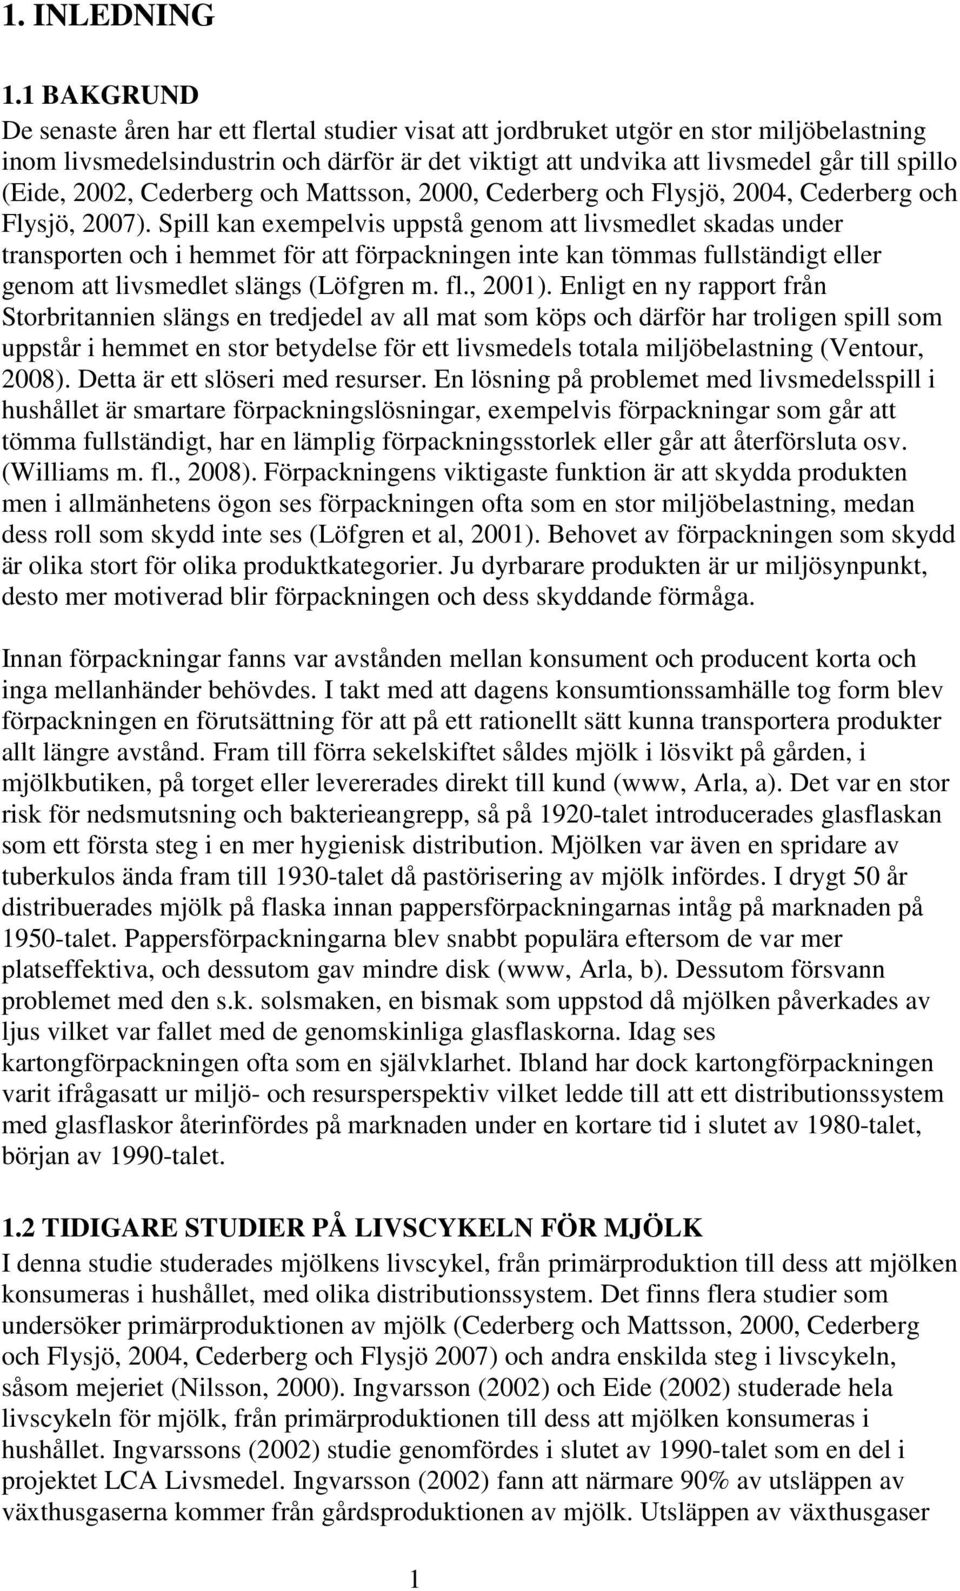 (Eide, 2002, Cederberg och Mattsson, 2000, Cederberg och Flysjö, 2004, Cederberg och Flysjö, 2007).